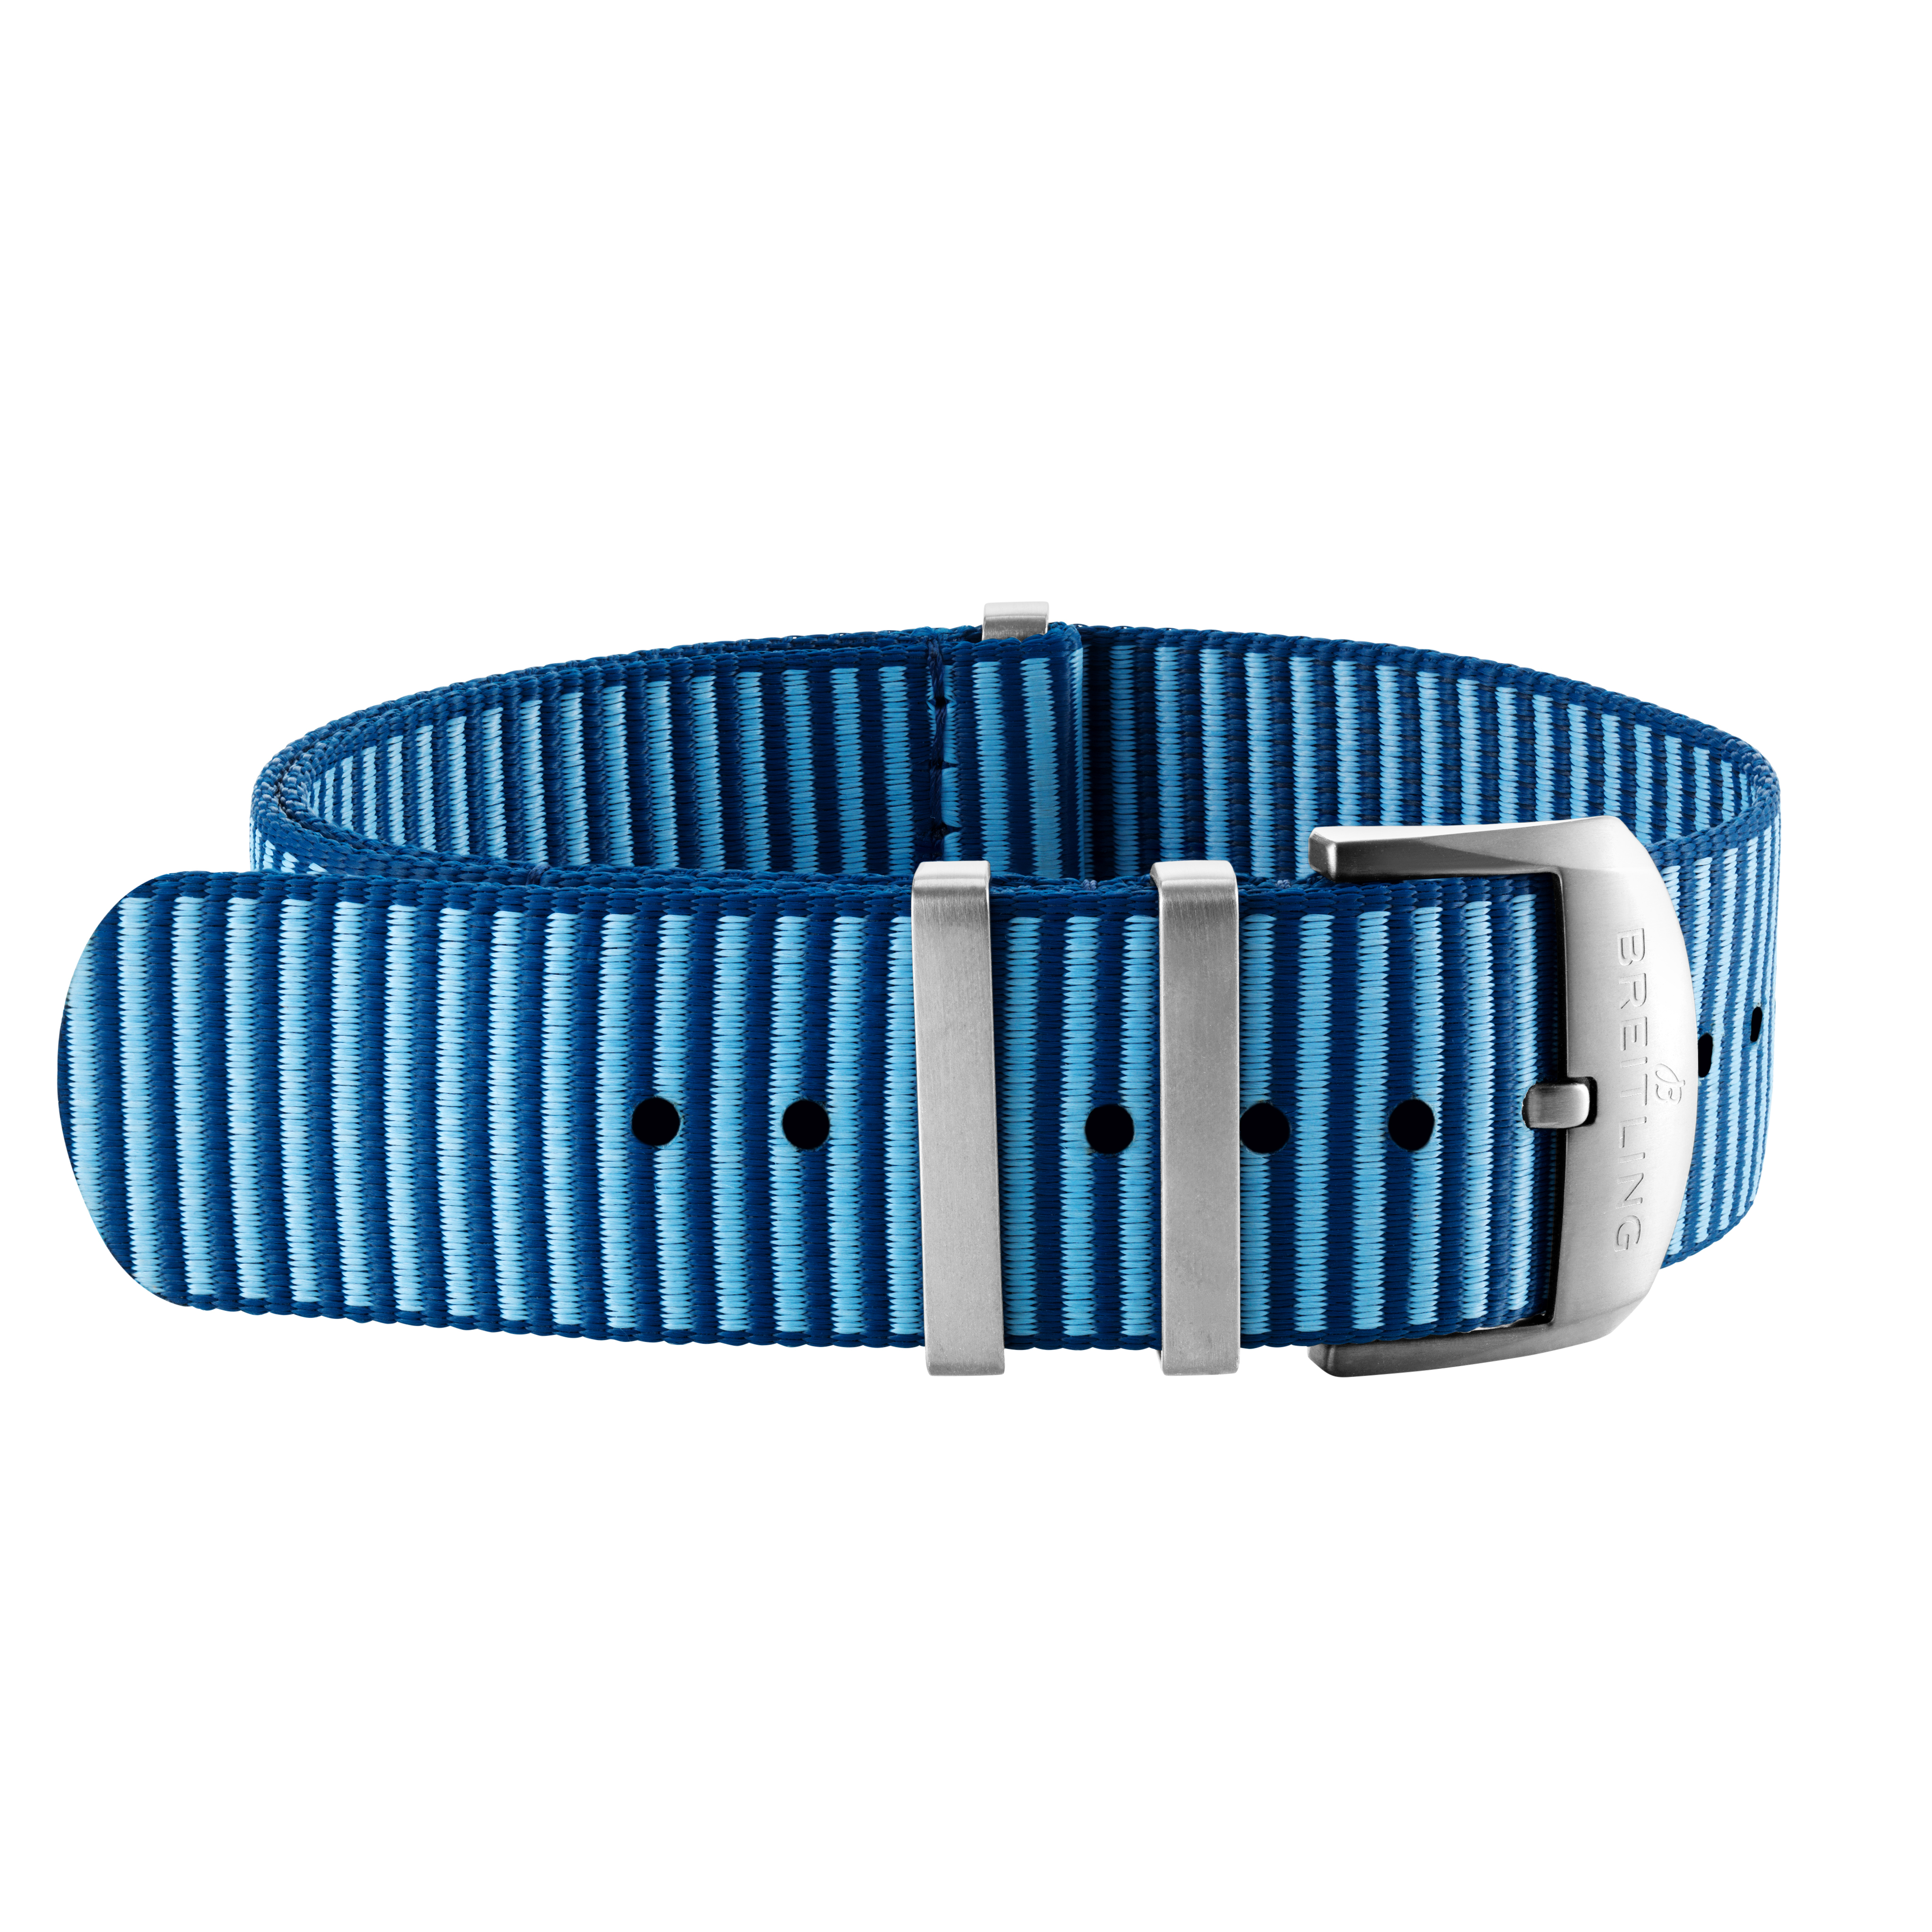 Bracelet une pièce Outerknown en fil ECONYL® bleu clair (avec passants en acier inoxydable) - 20 mm